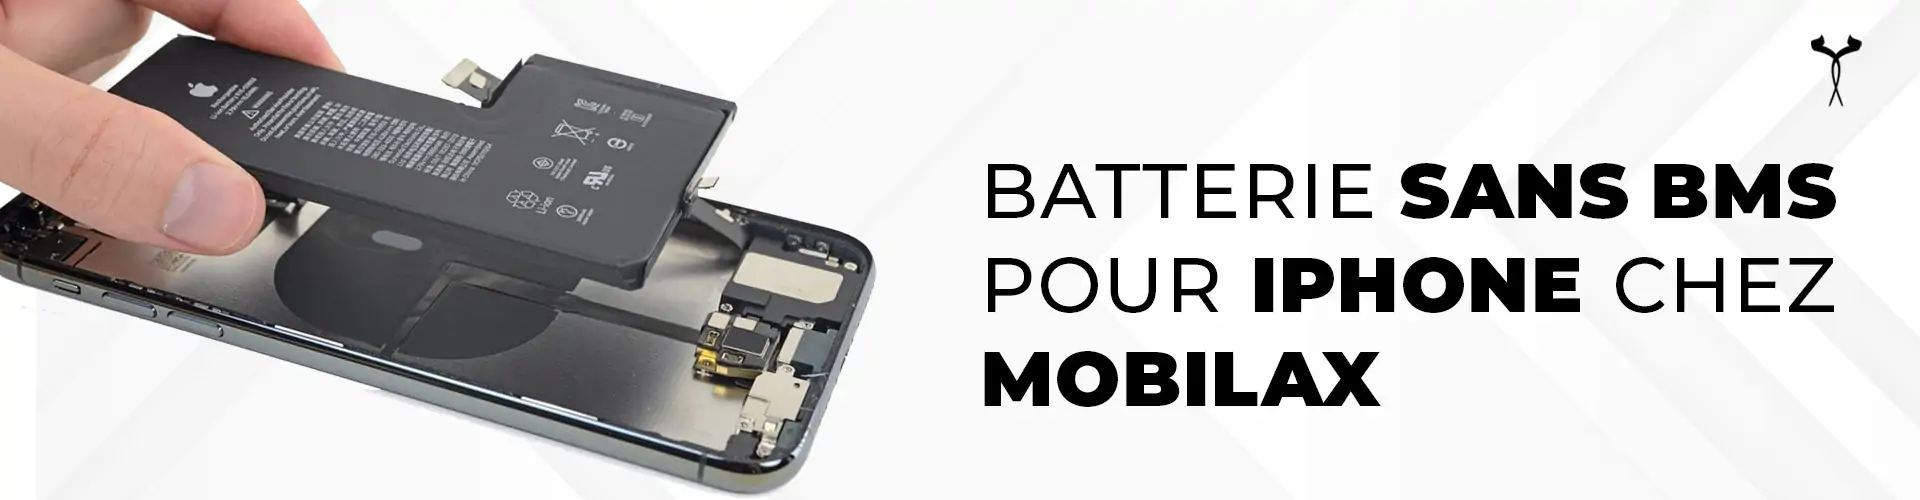 batterie BMS pour Iphone